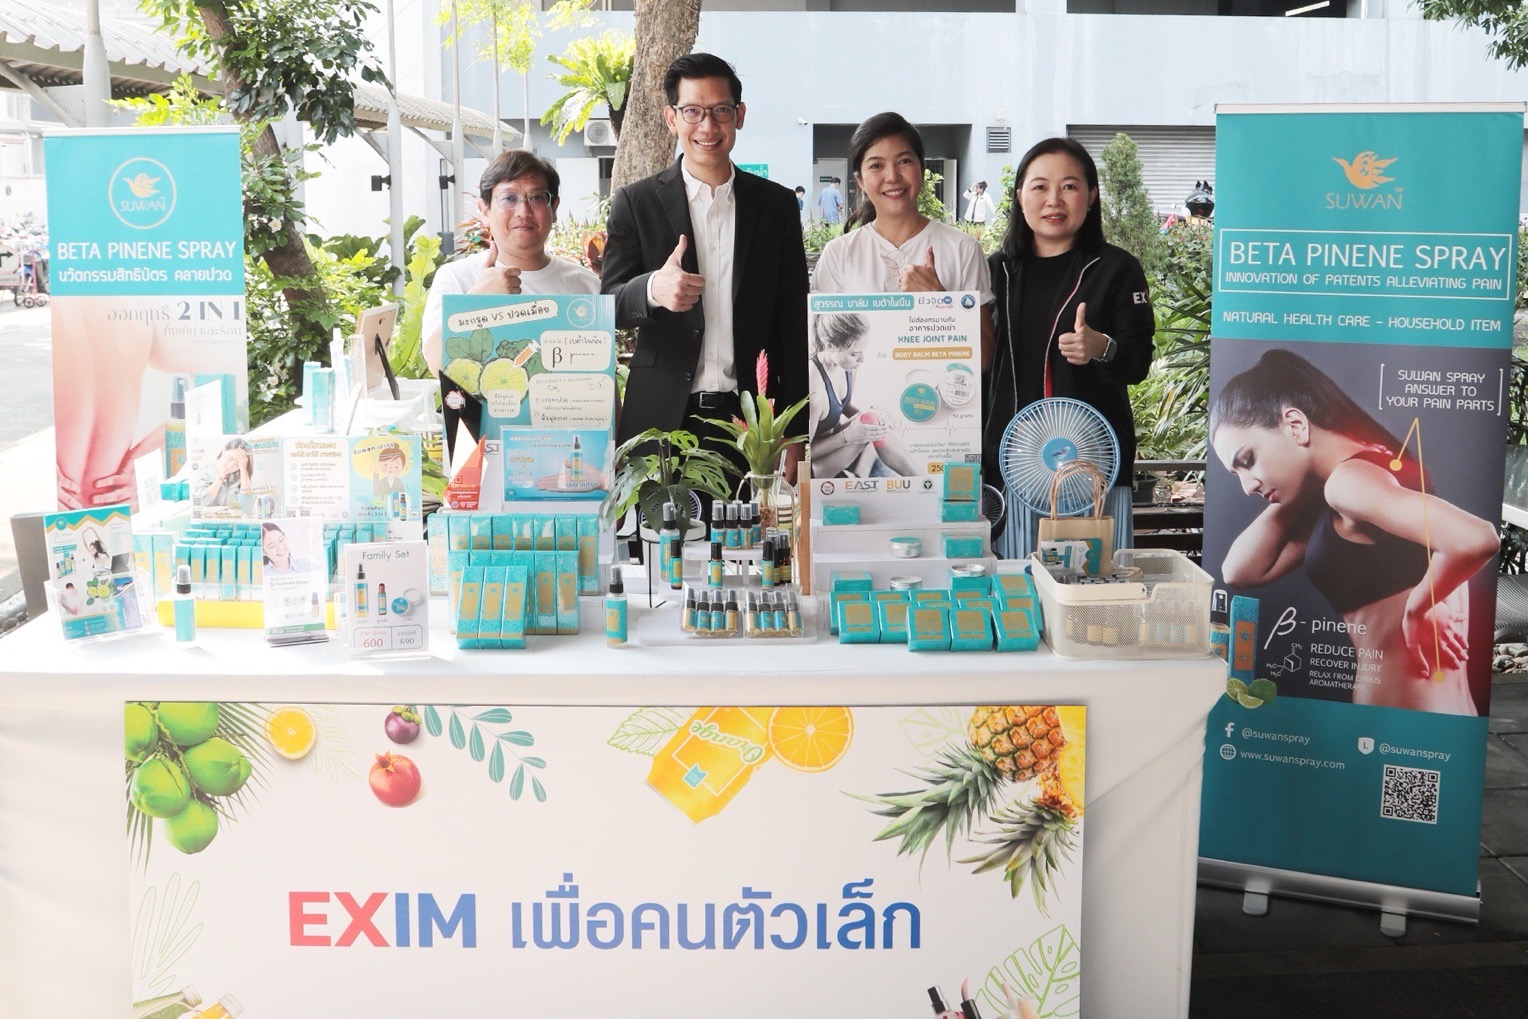 EXIM BANK บ่มเพาะผู้ส่งออก SMEs ภายใต้โครงการ “EXIM เพื่อคนตัวเล็ก”